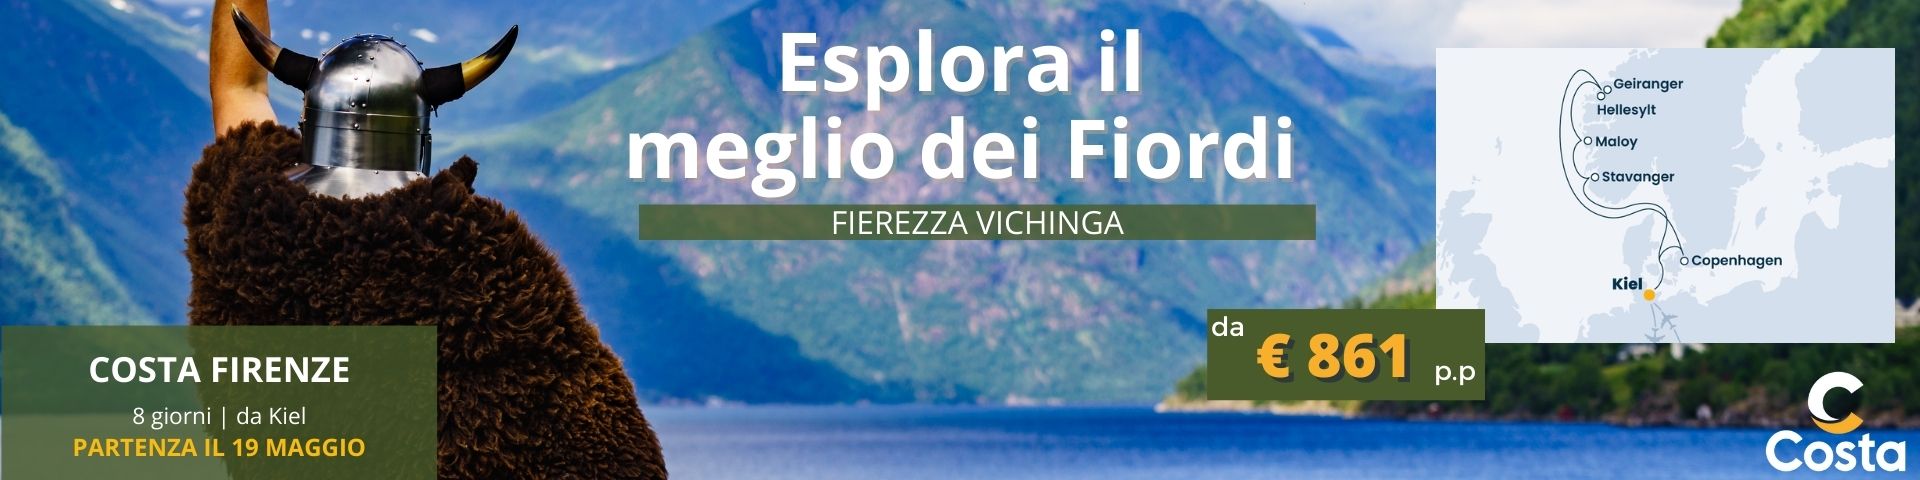 Esplora il meglio dei Fiordi con Costa Firenze